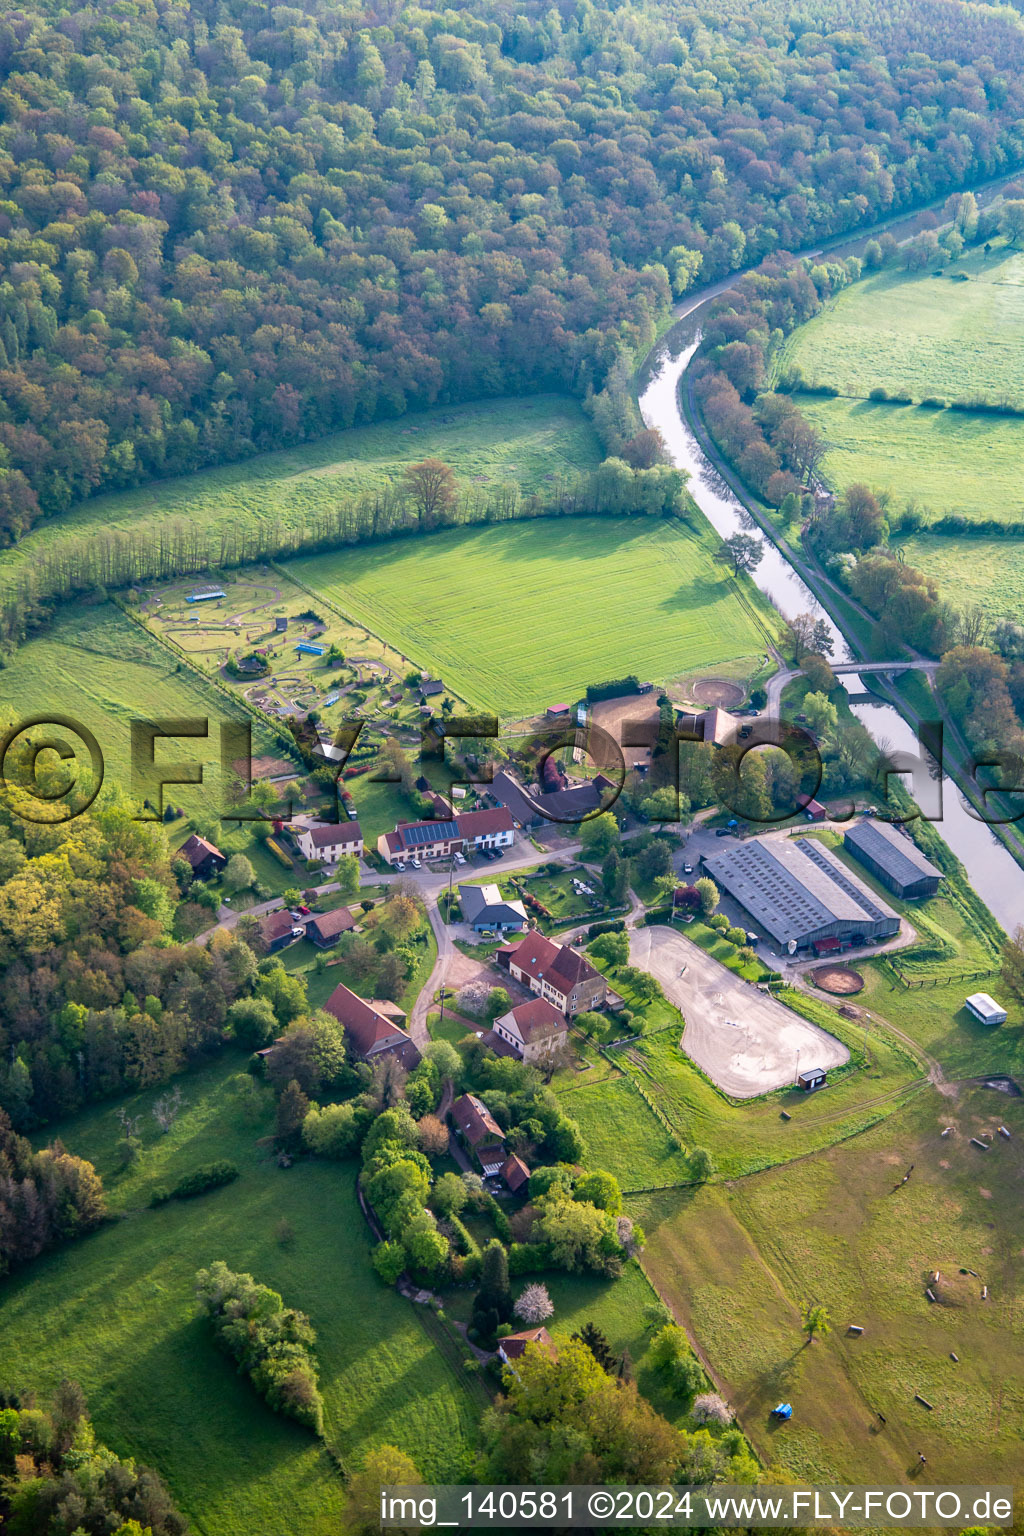 Photographie aérienne de Parc Naturel de Cheval à Neuweyerhof à Altwiller dans le département Bas Rhin, France